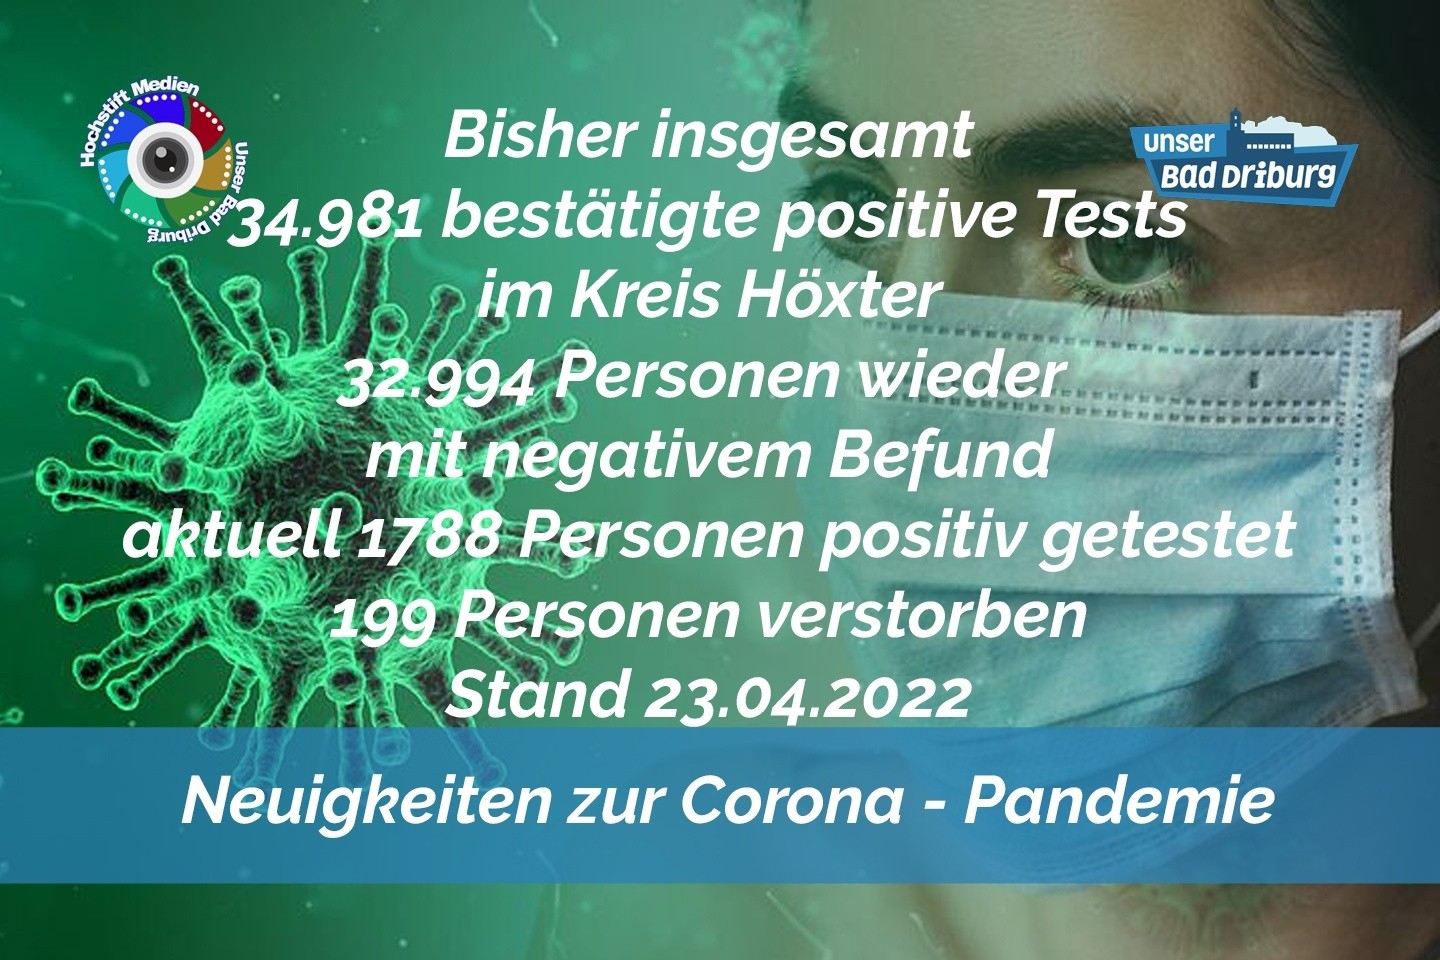 Update 23. April 2022: 193 weitere amtlich positive Tests im Kreis Höxter